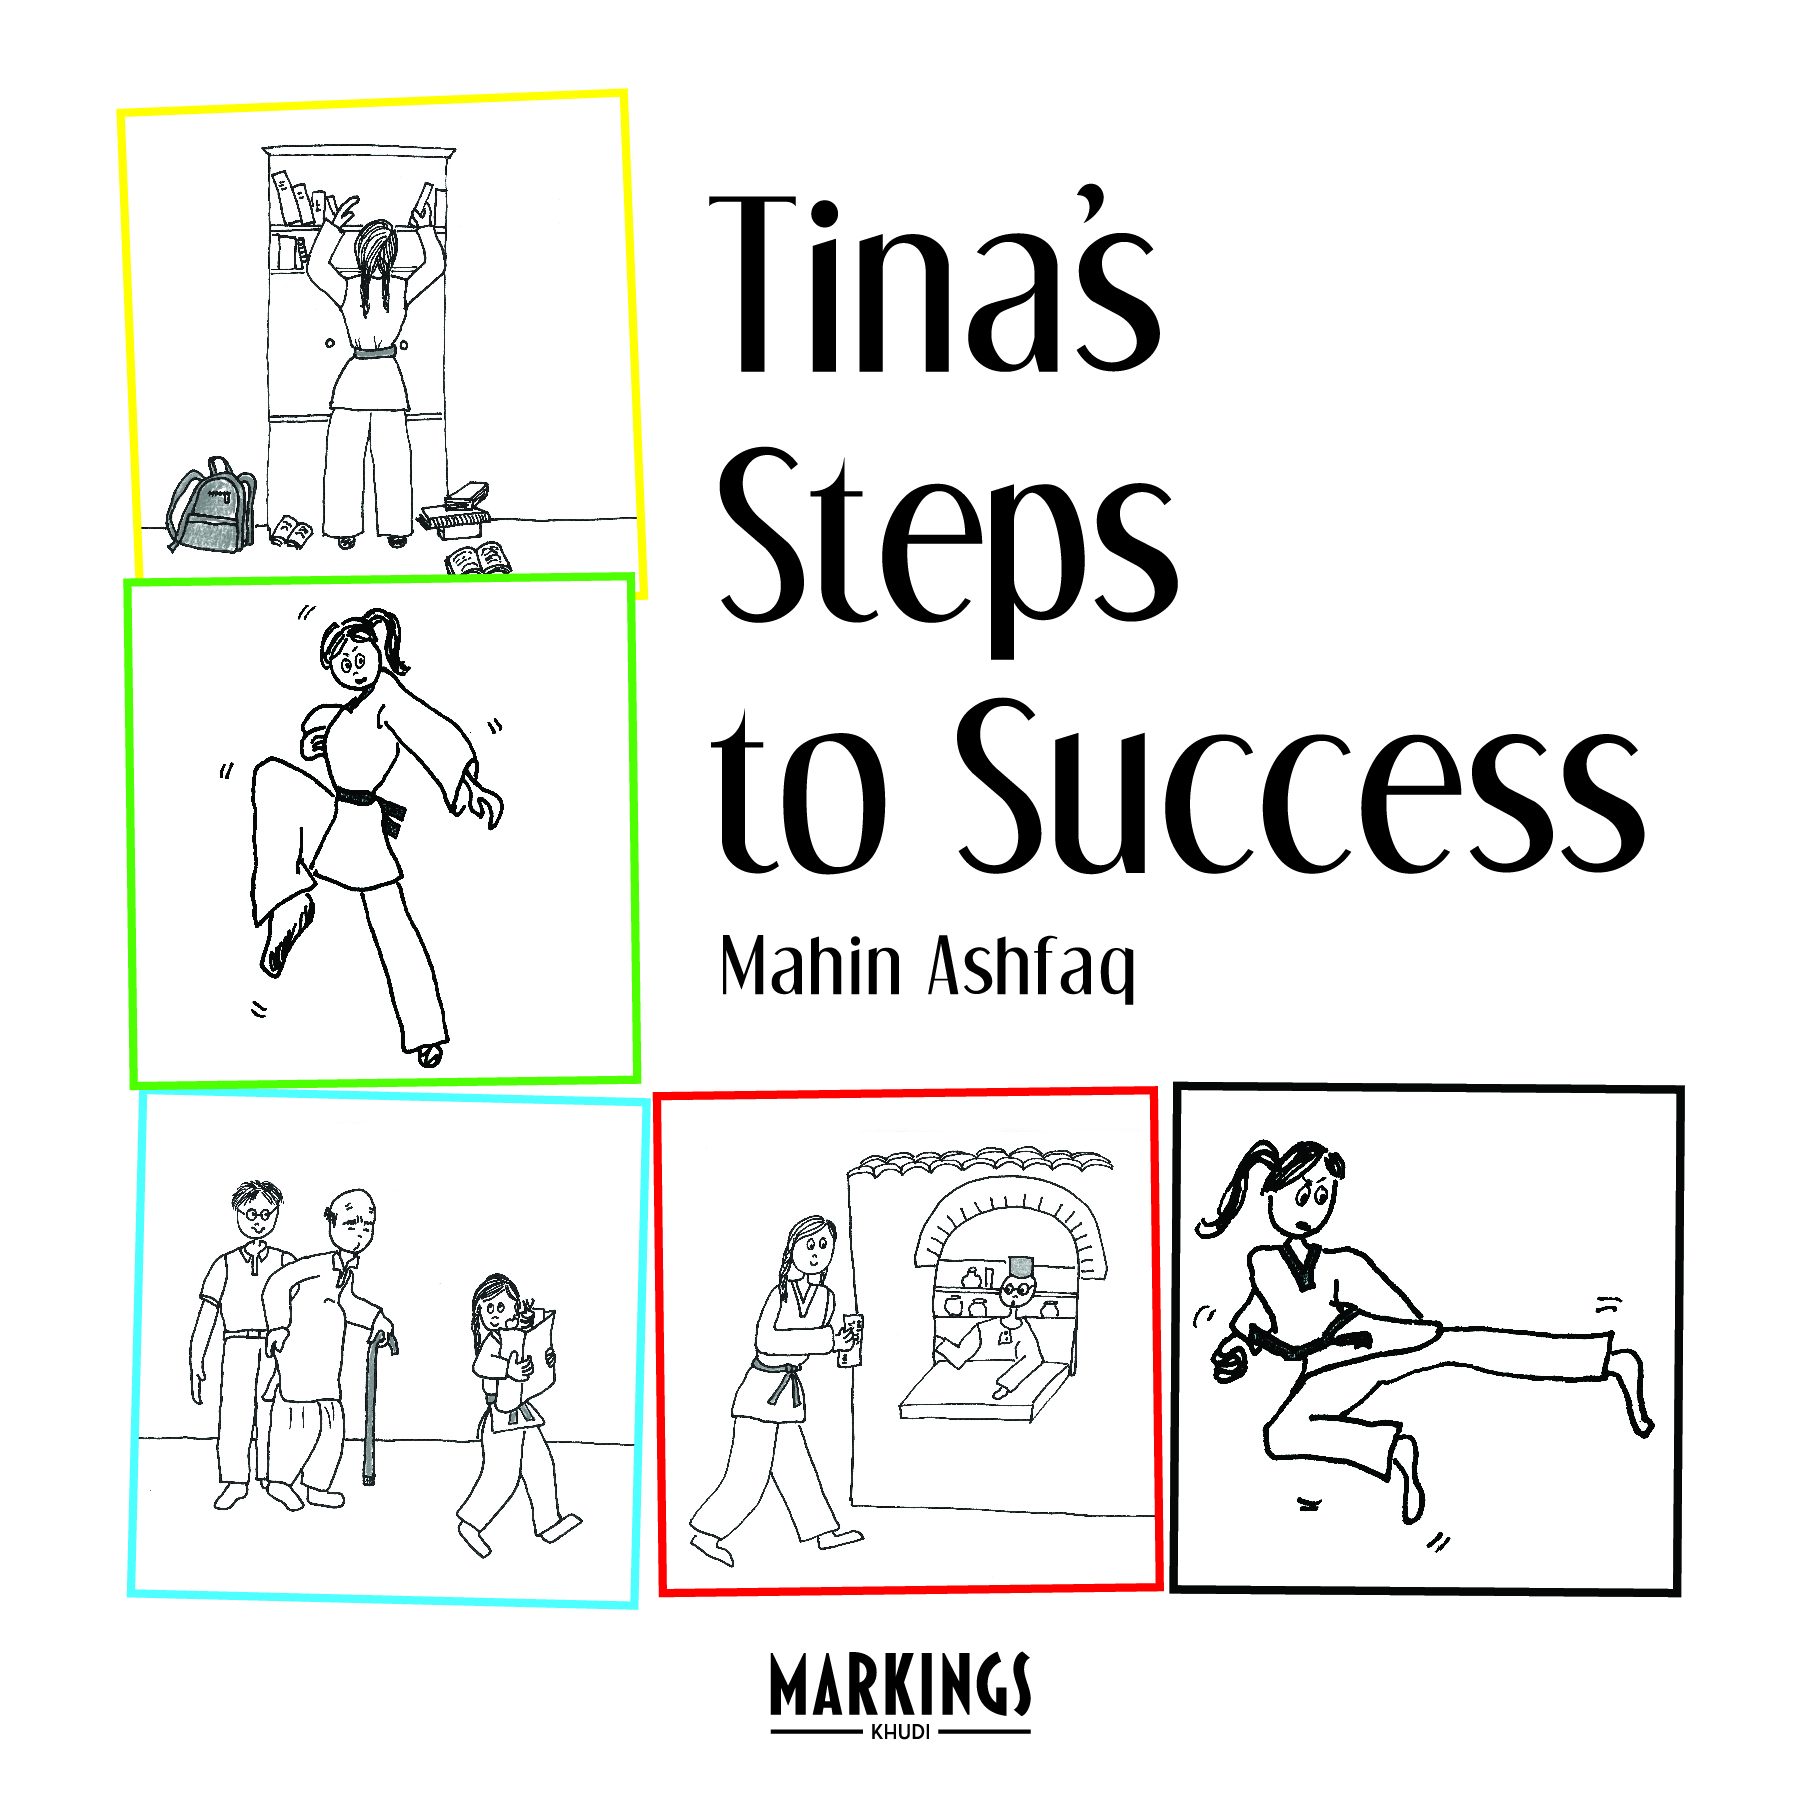 tina's steps to success